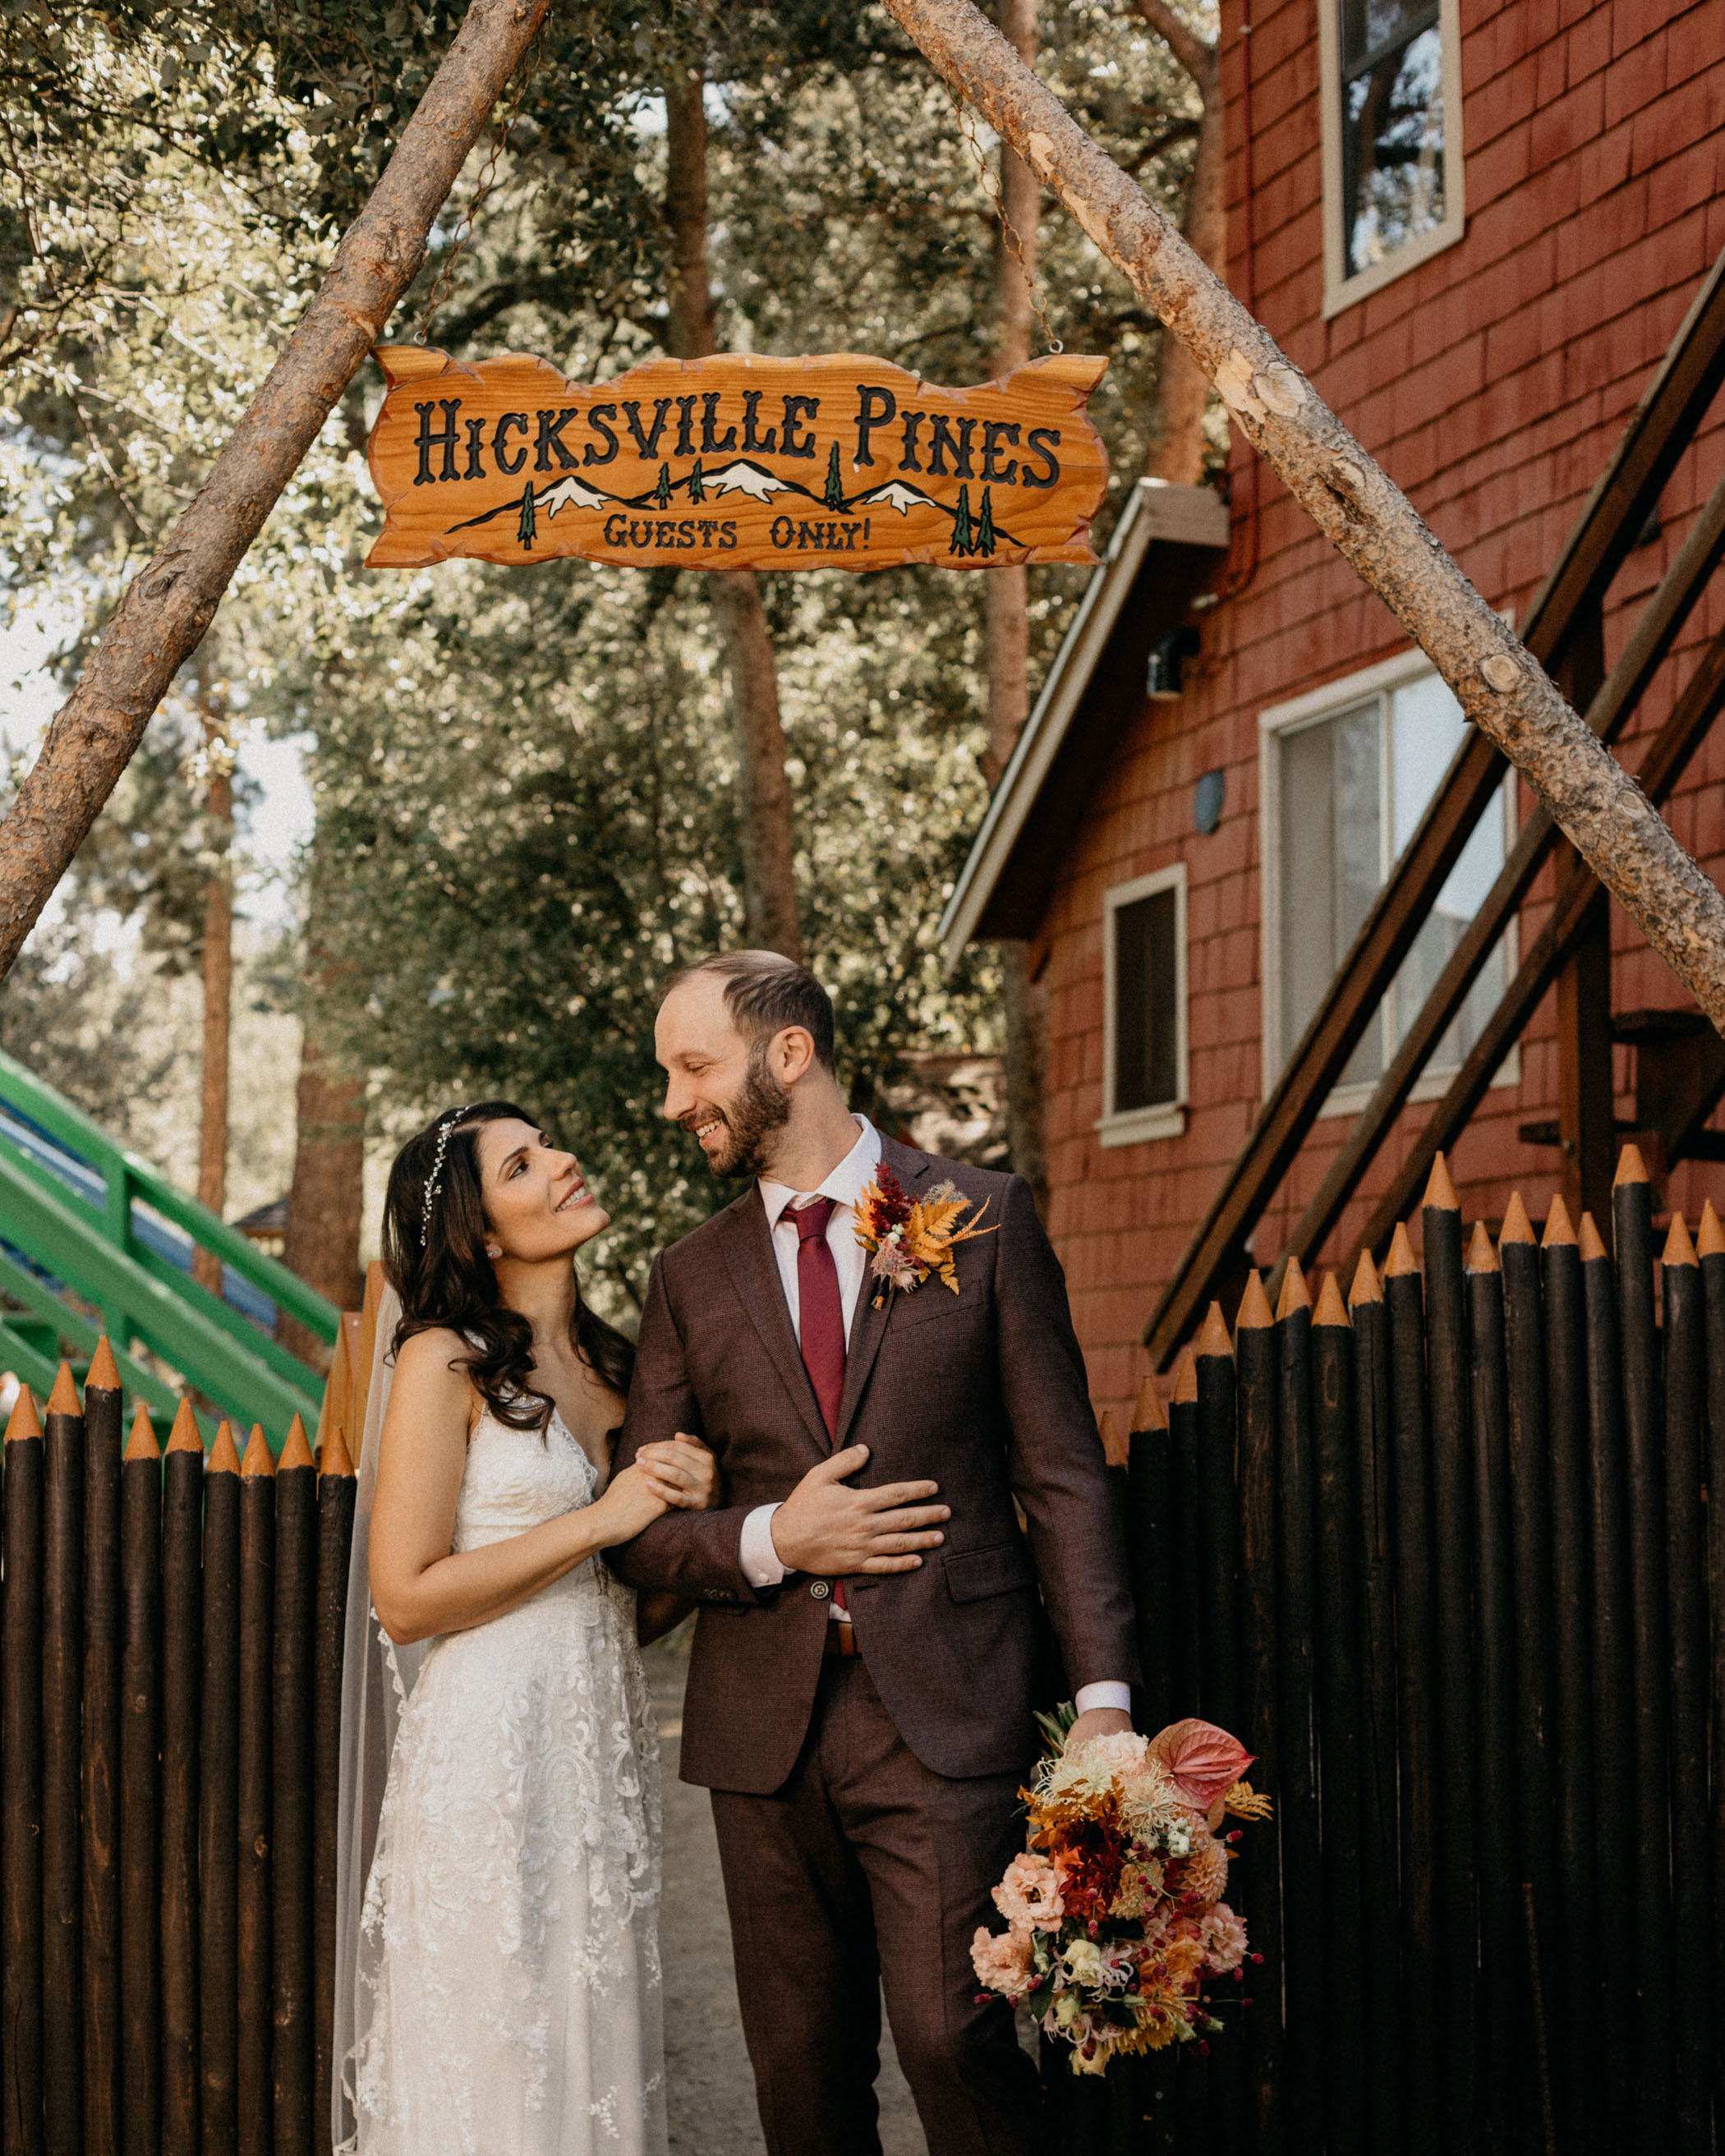 70’s Kitsch-Inspired Wedding At Hicksville Pines